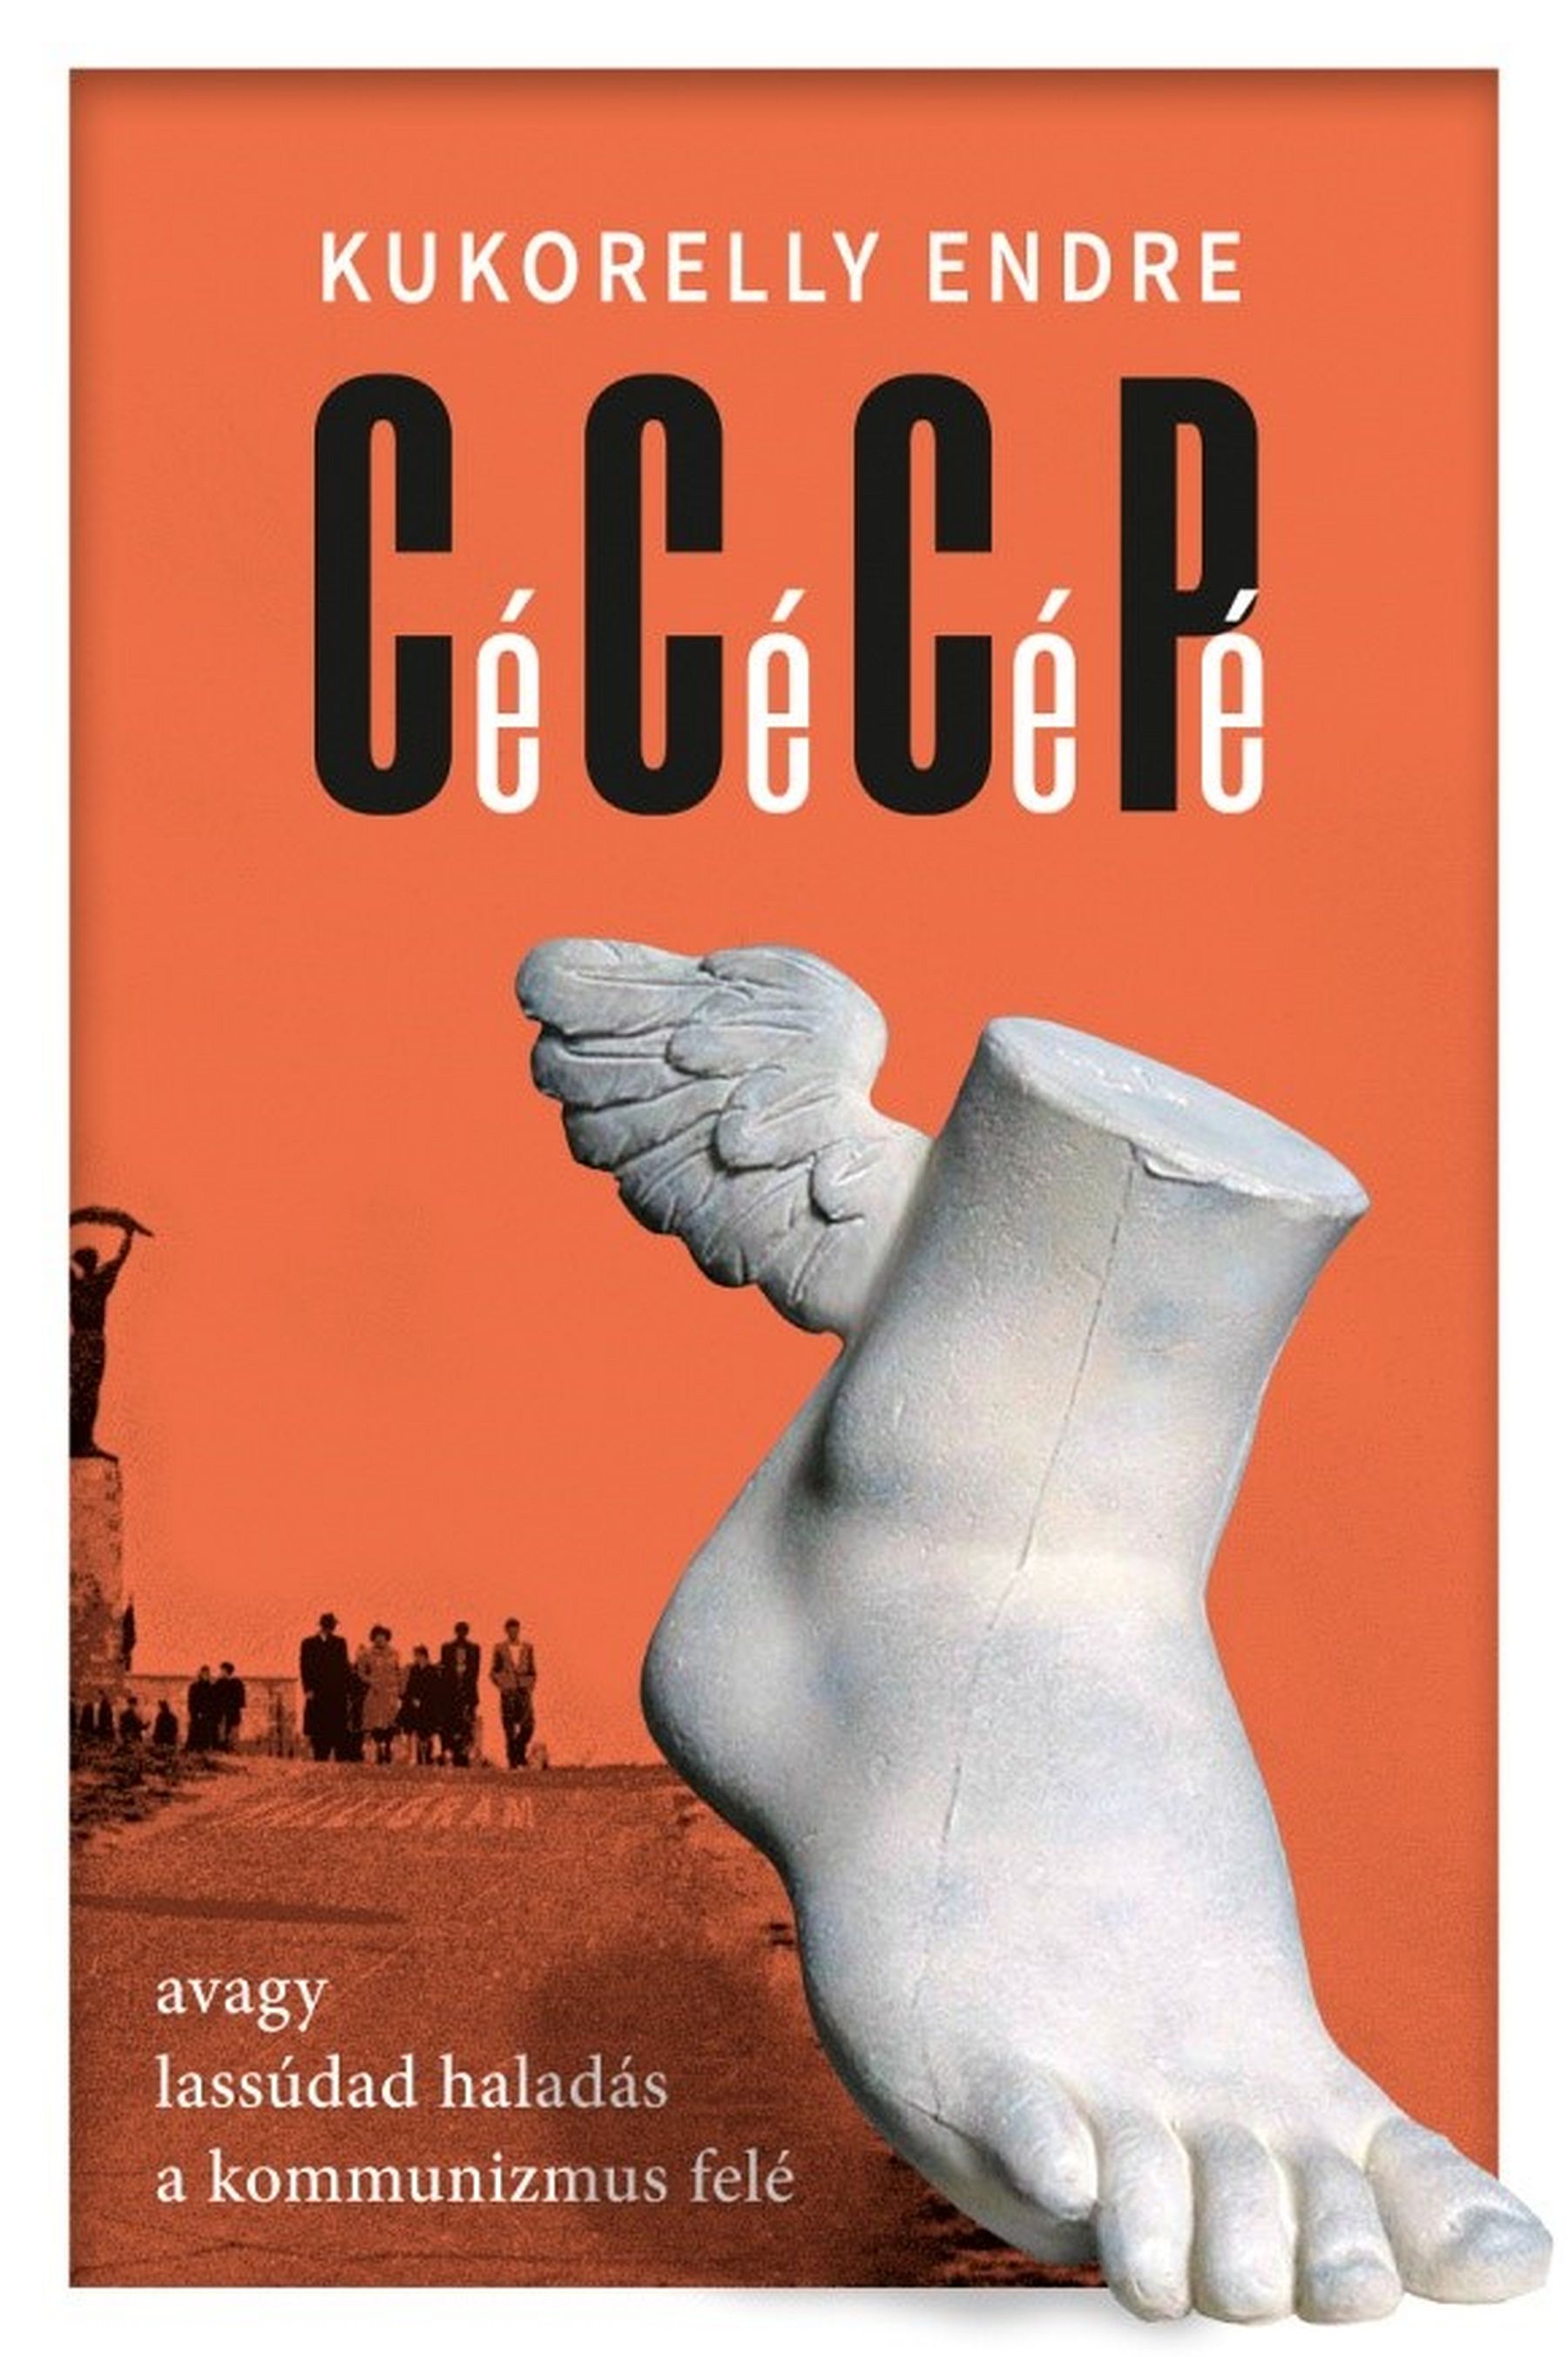 Cé Cé Cé Pé – Kukorelly Endre kötetének bemutatója az Új Magyar Képtárban